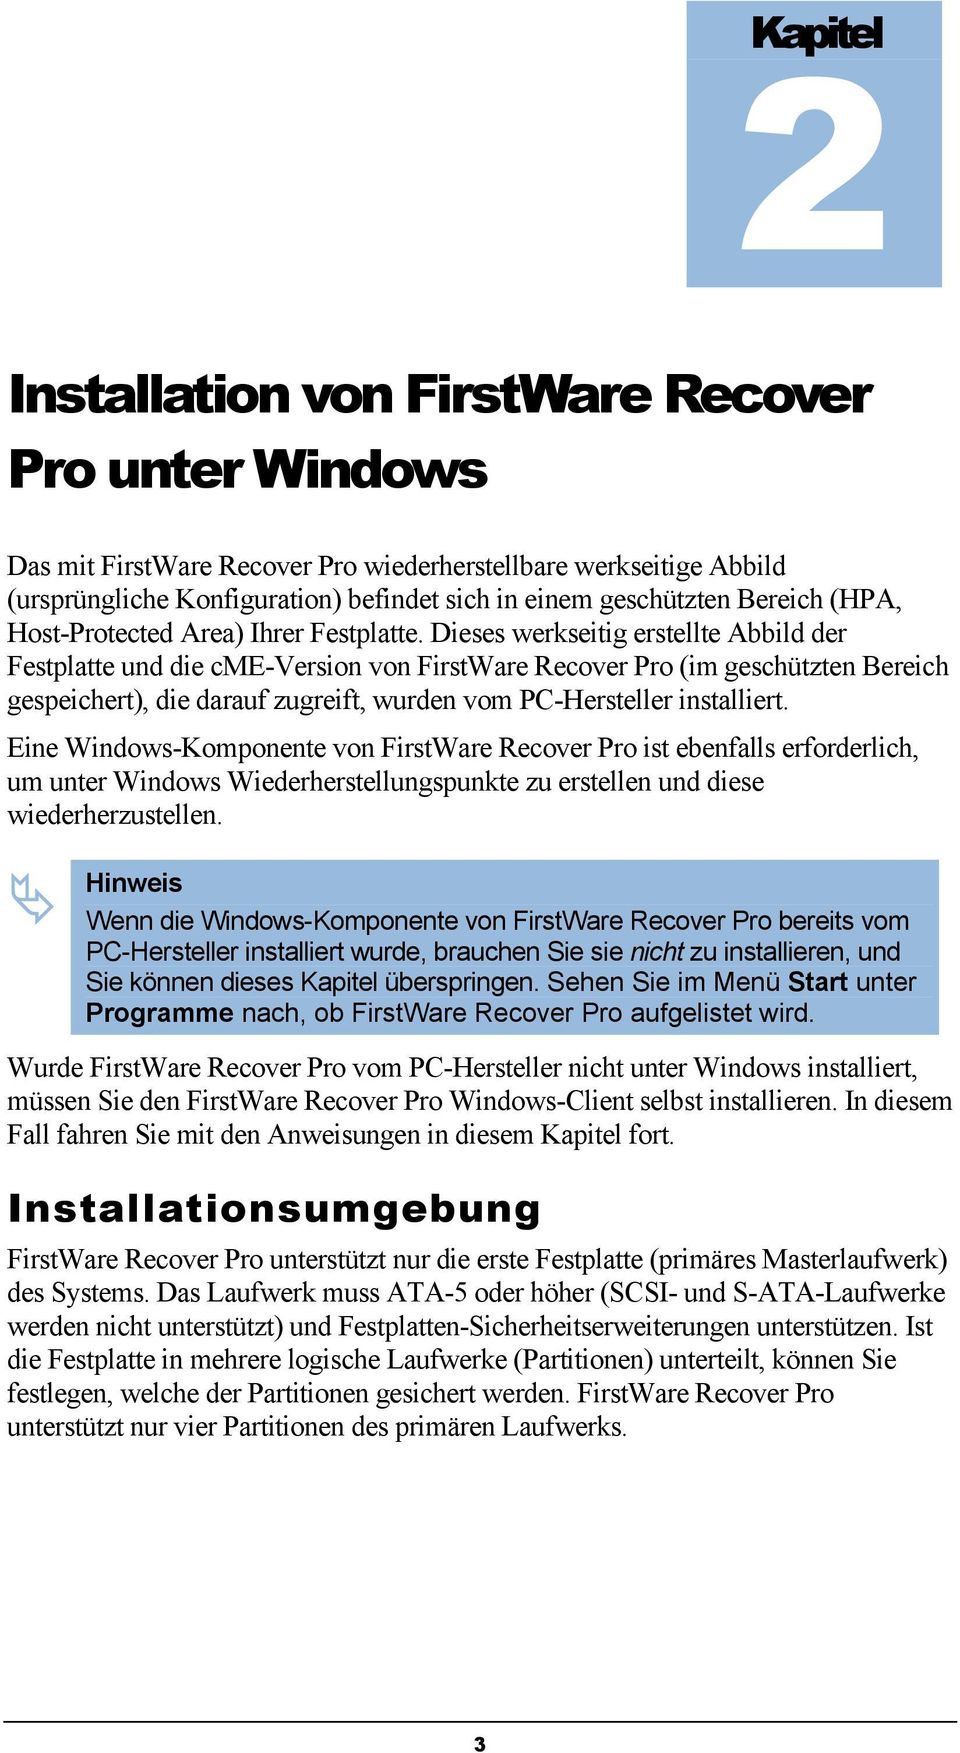 Dieses werkseitig erstellte Abbild der Festplatte und die cme-version von FirstWare Recover Pro (im geschützten Bereich gespeichert), die darauf zugreift, wurden vom PC-Hersteller installiert.